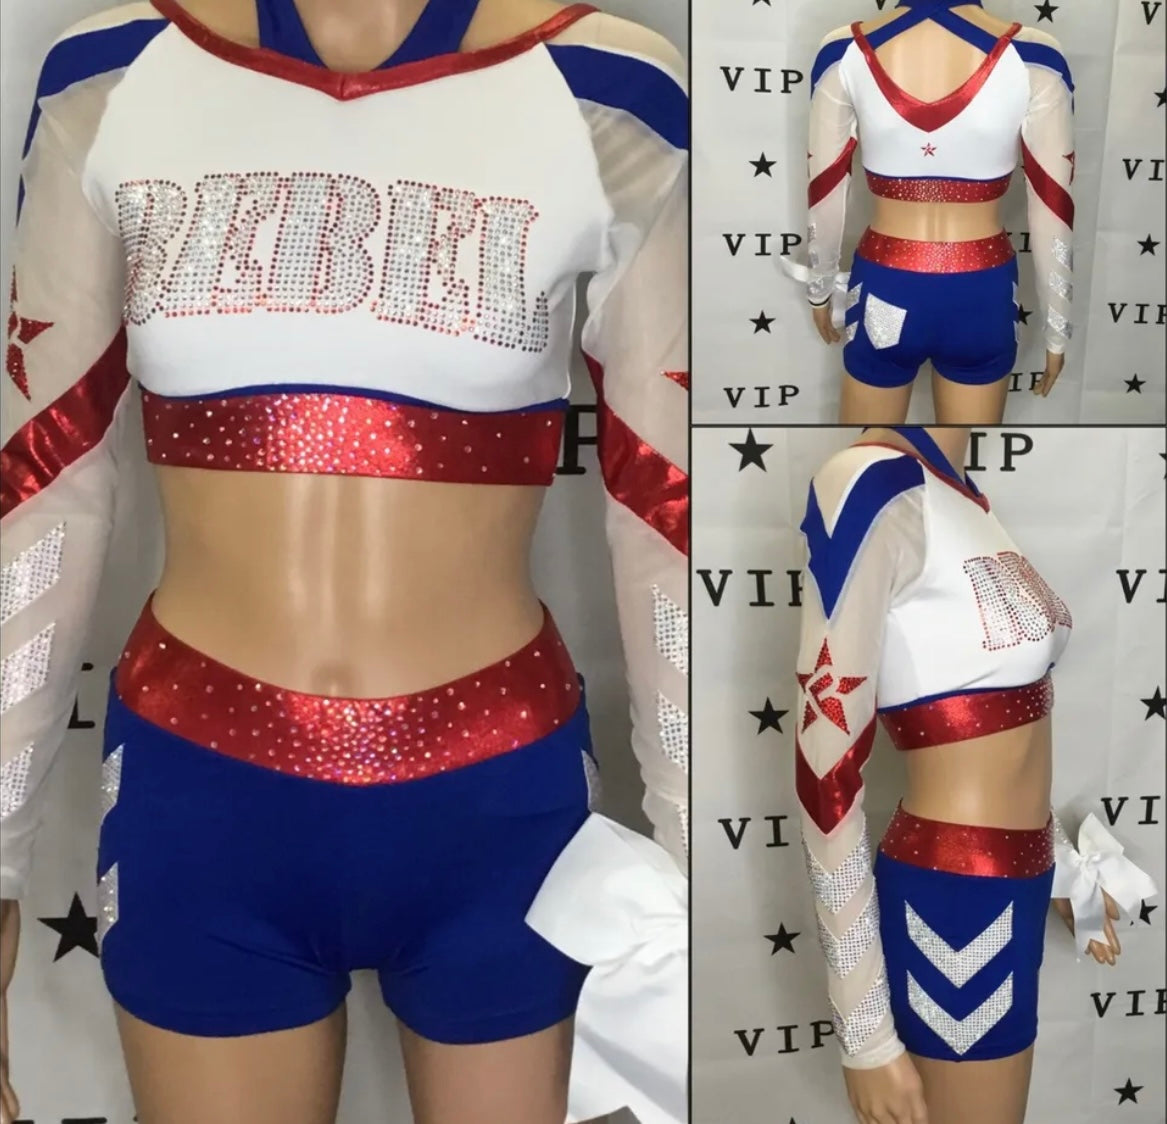 Allstar Cheer Uniforms from Rebel Athletic